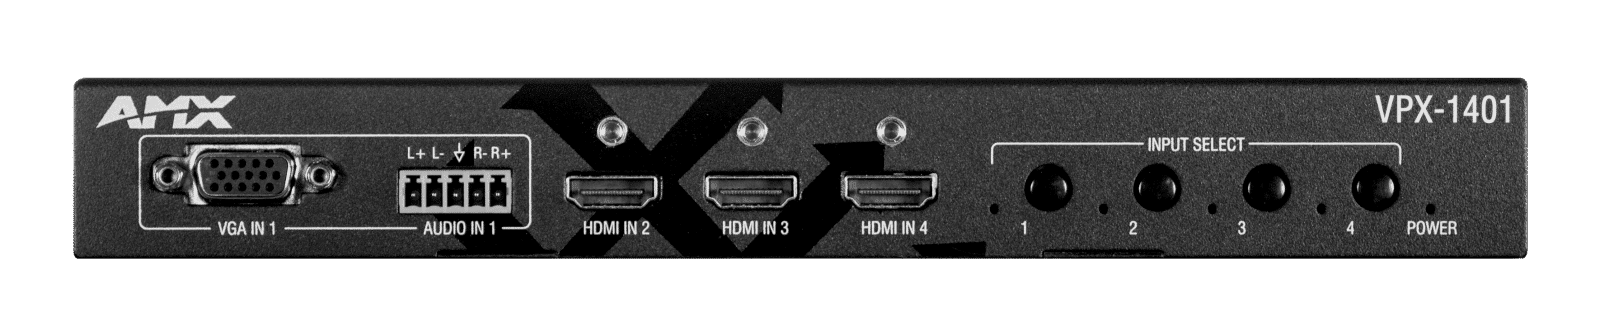 AMX VPX-1401 | VPX-1401: 4x1 4K60 Scaling Presentation Switcher, HDBaseT & HDMI Out